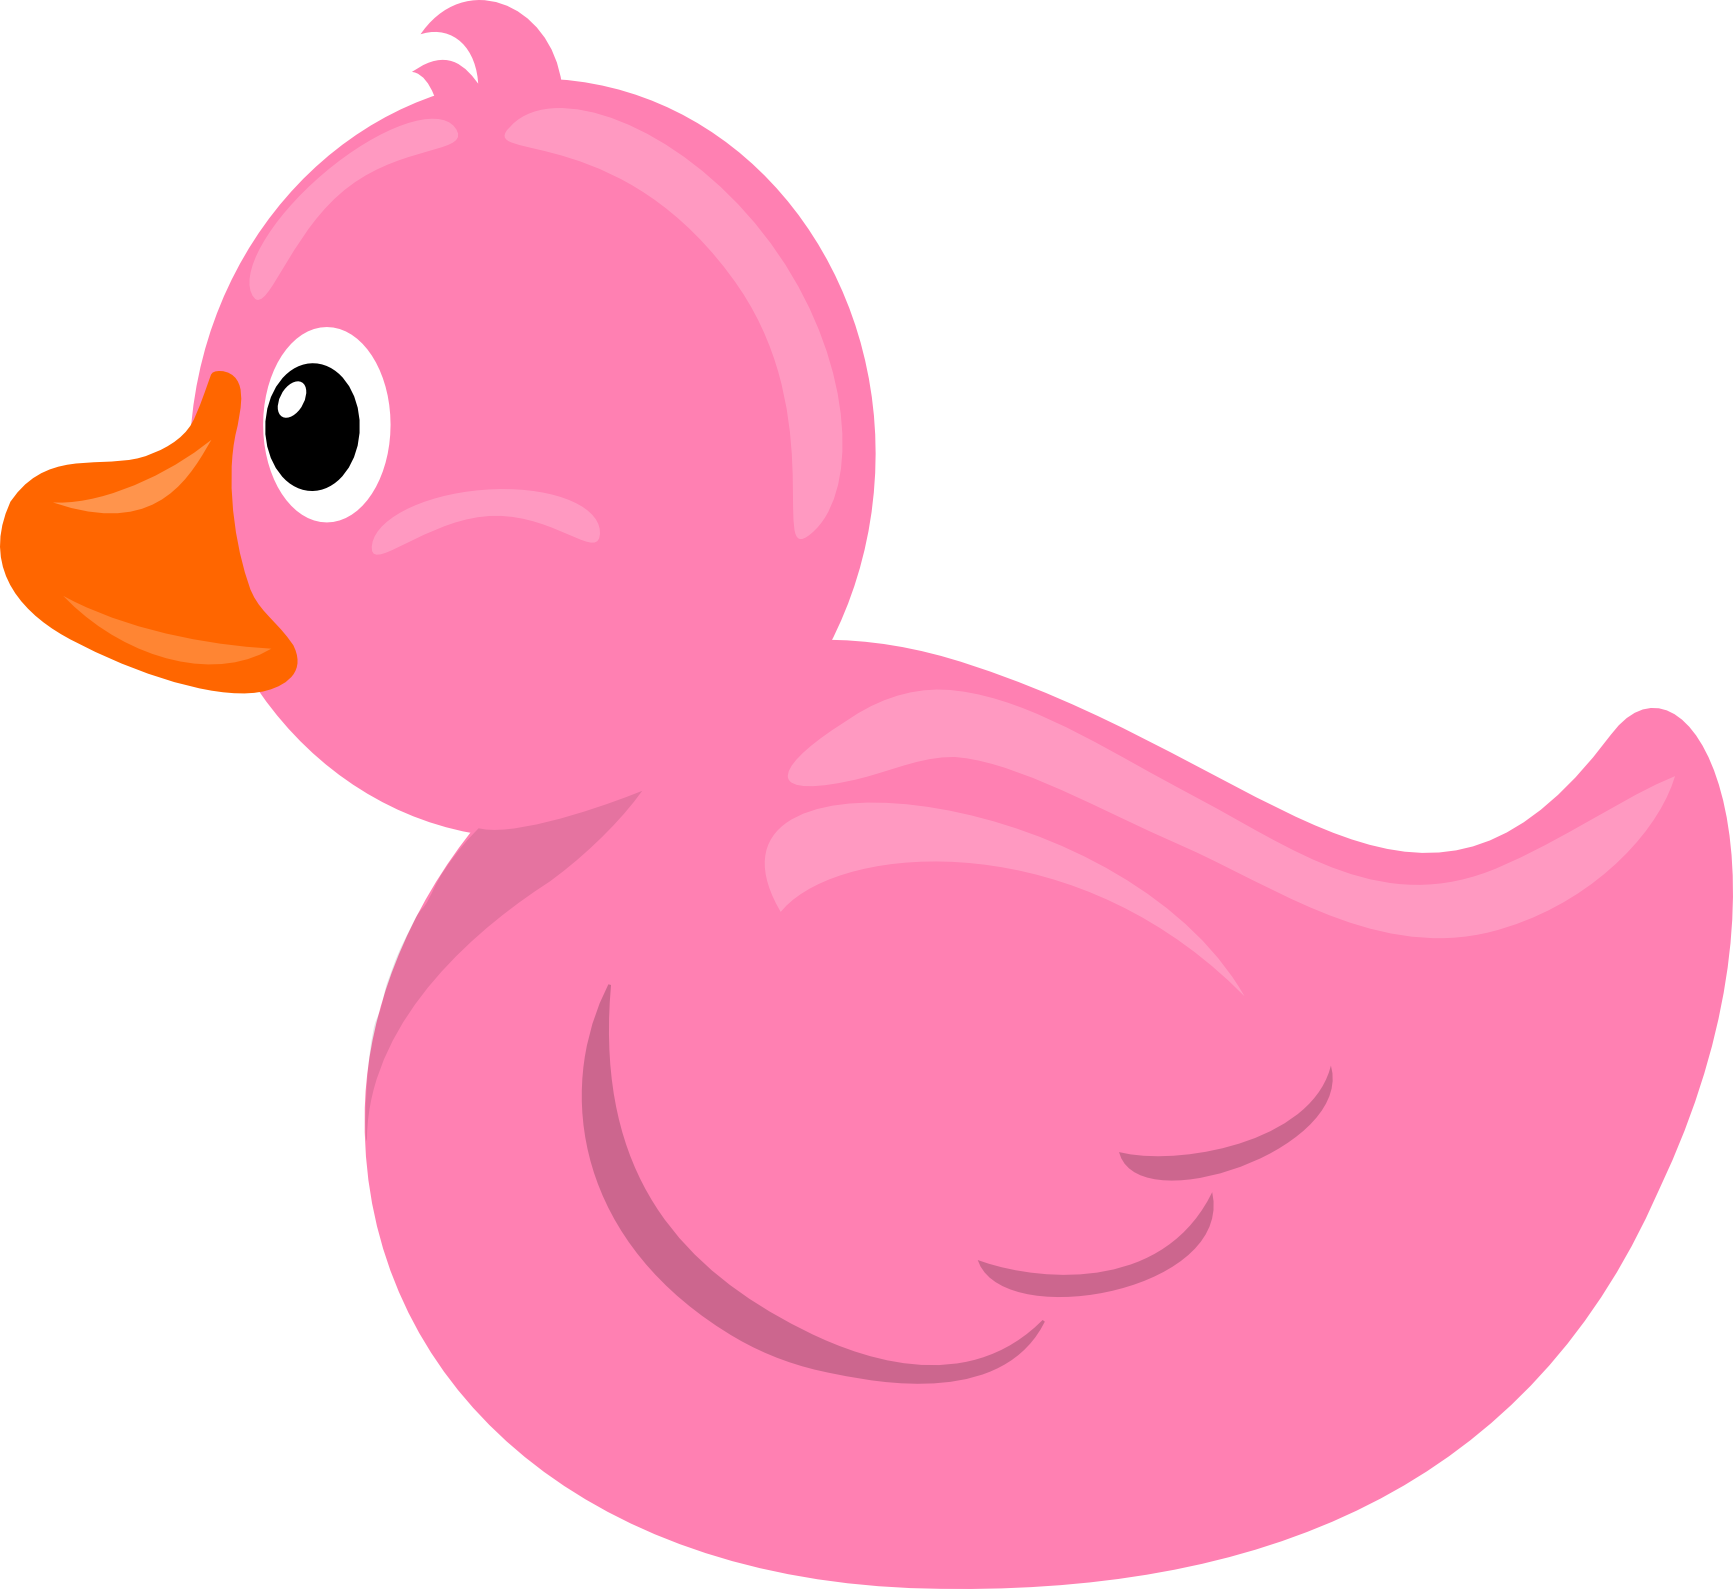 Rubber duck stormdesignz pink. Duckling clipart cartoon